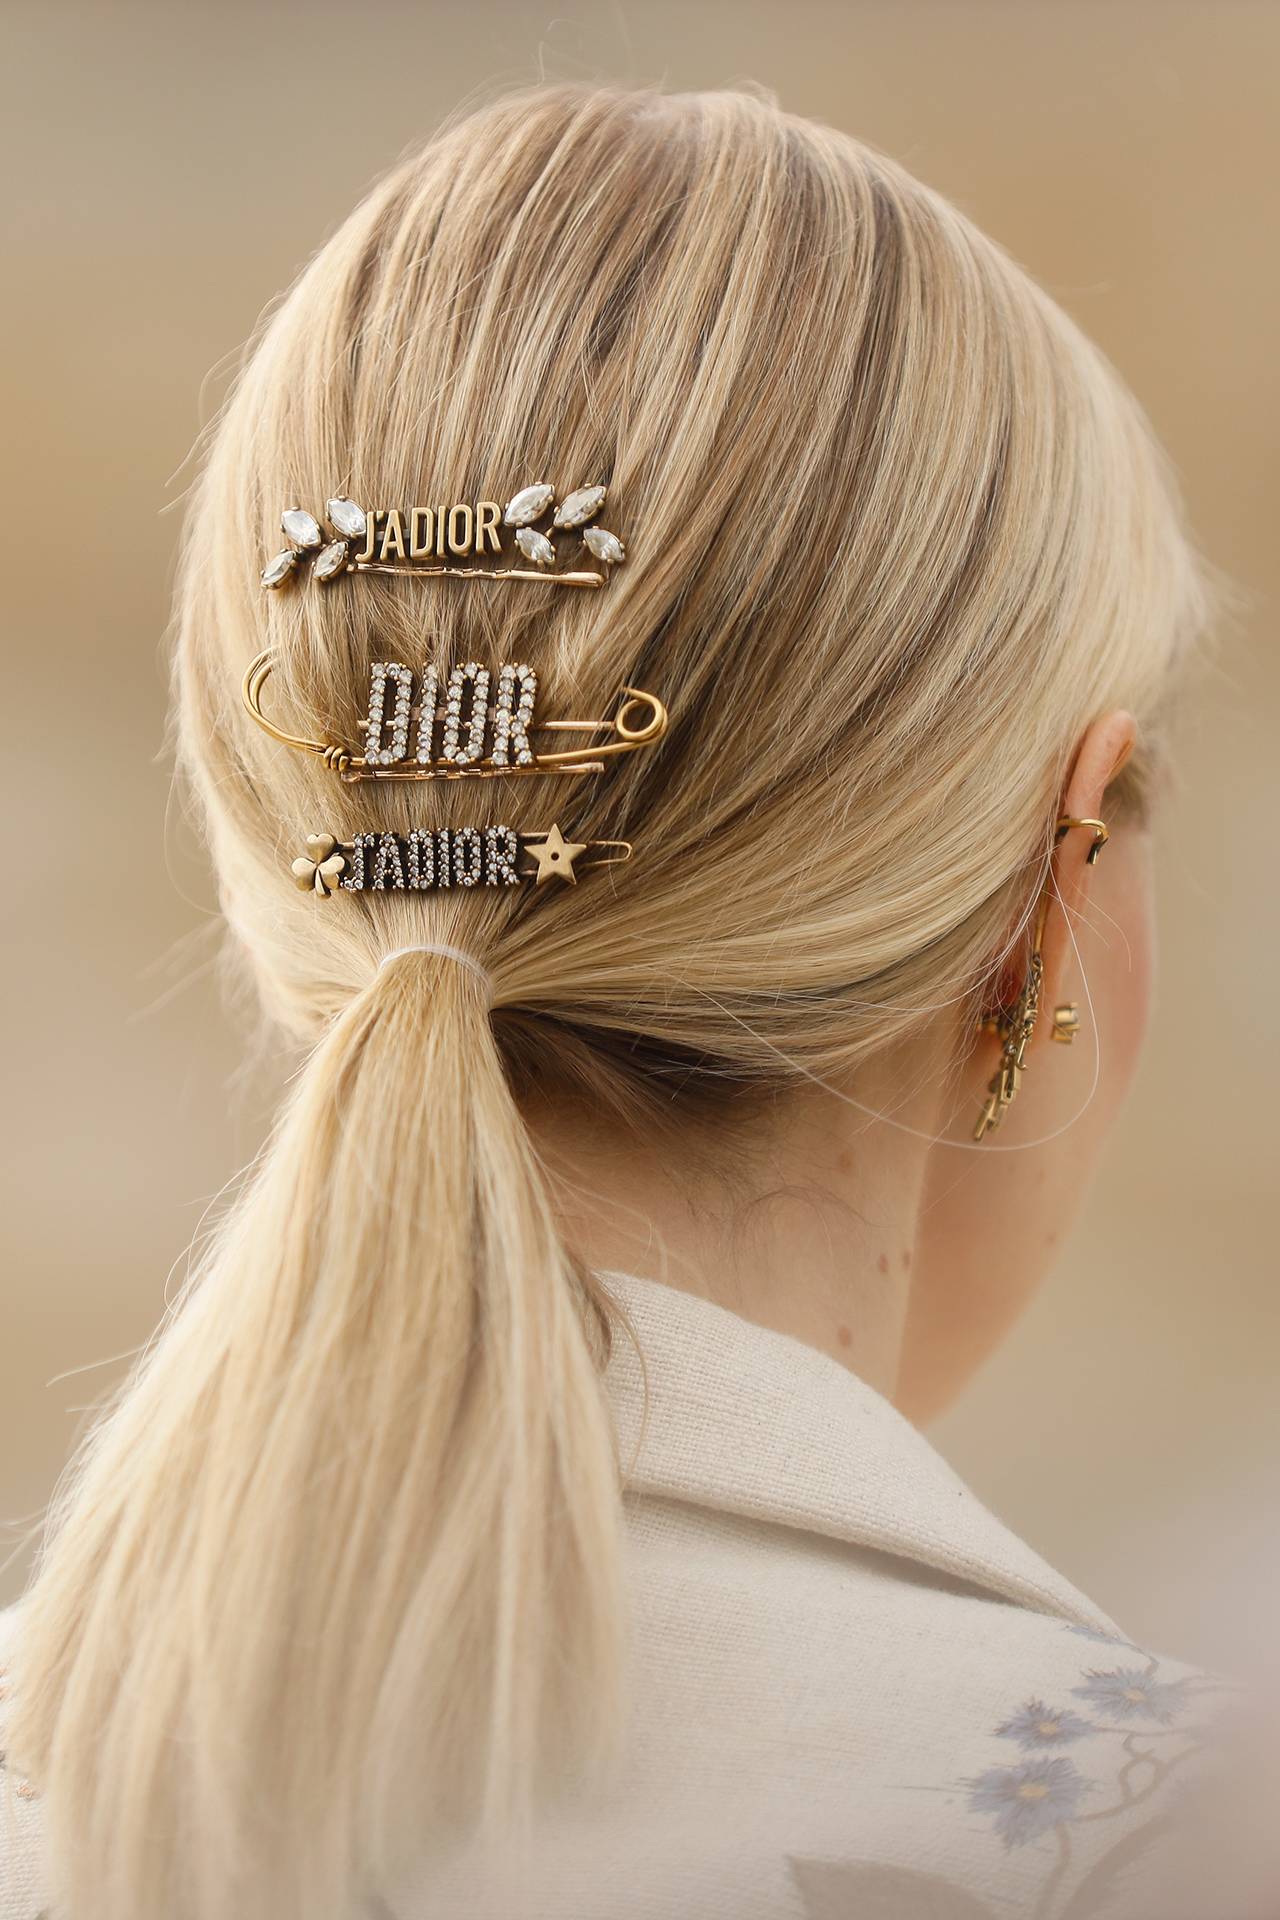 dior hair clip